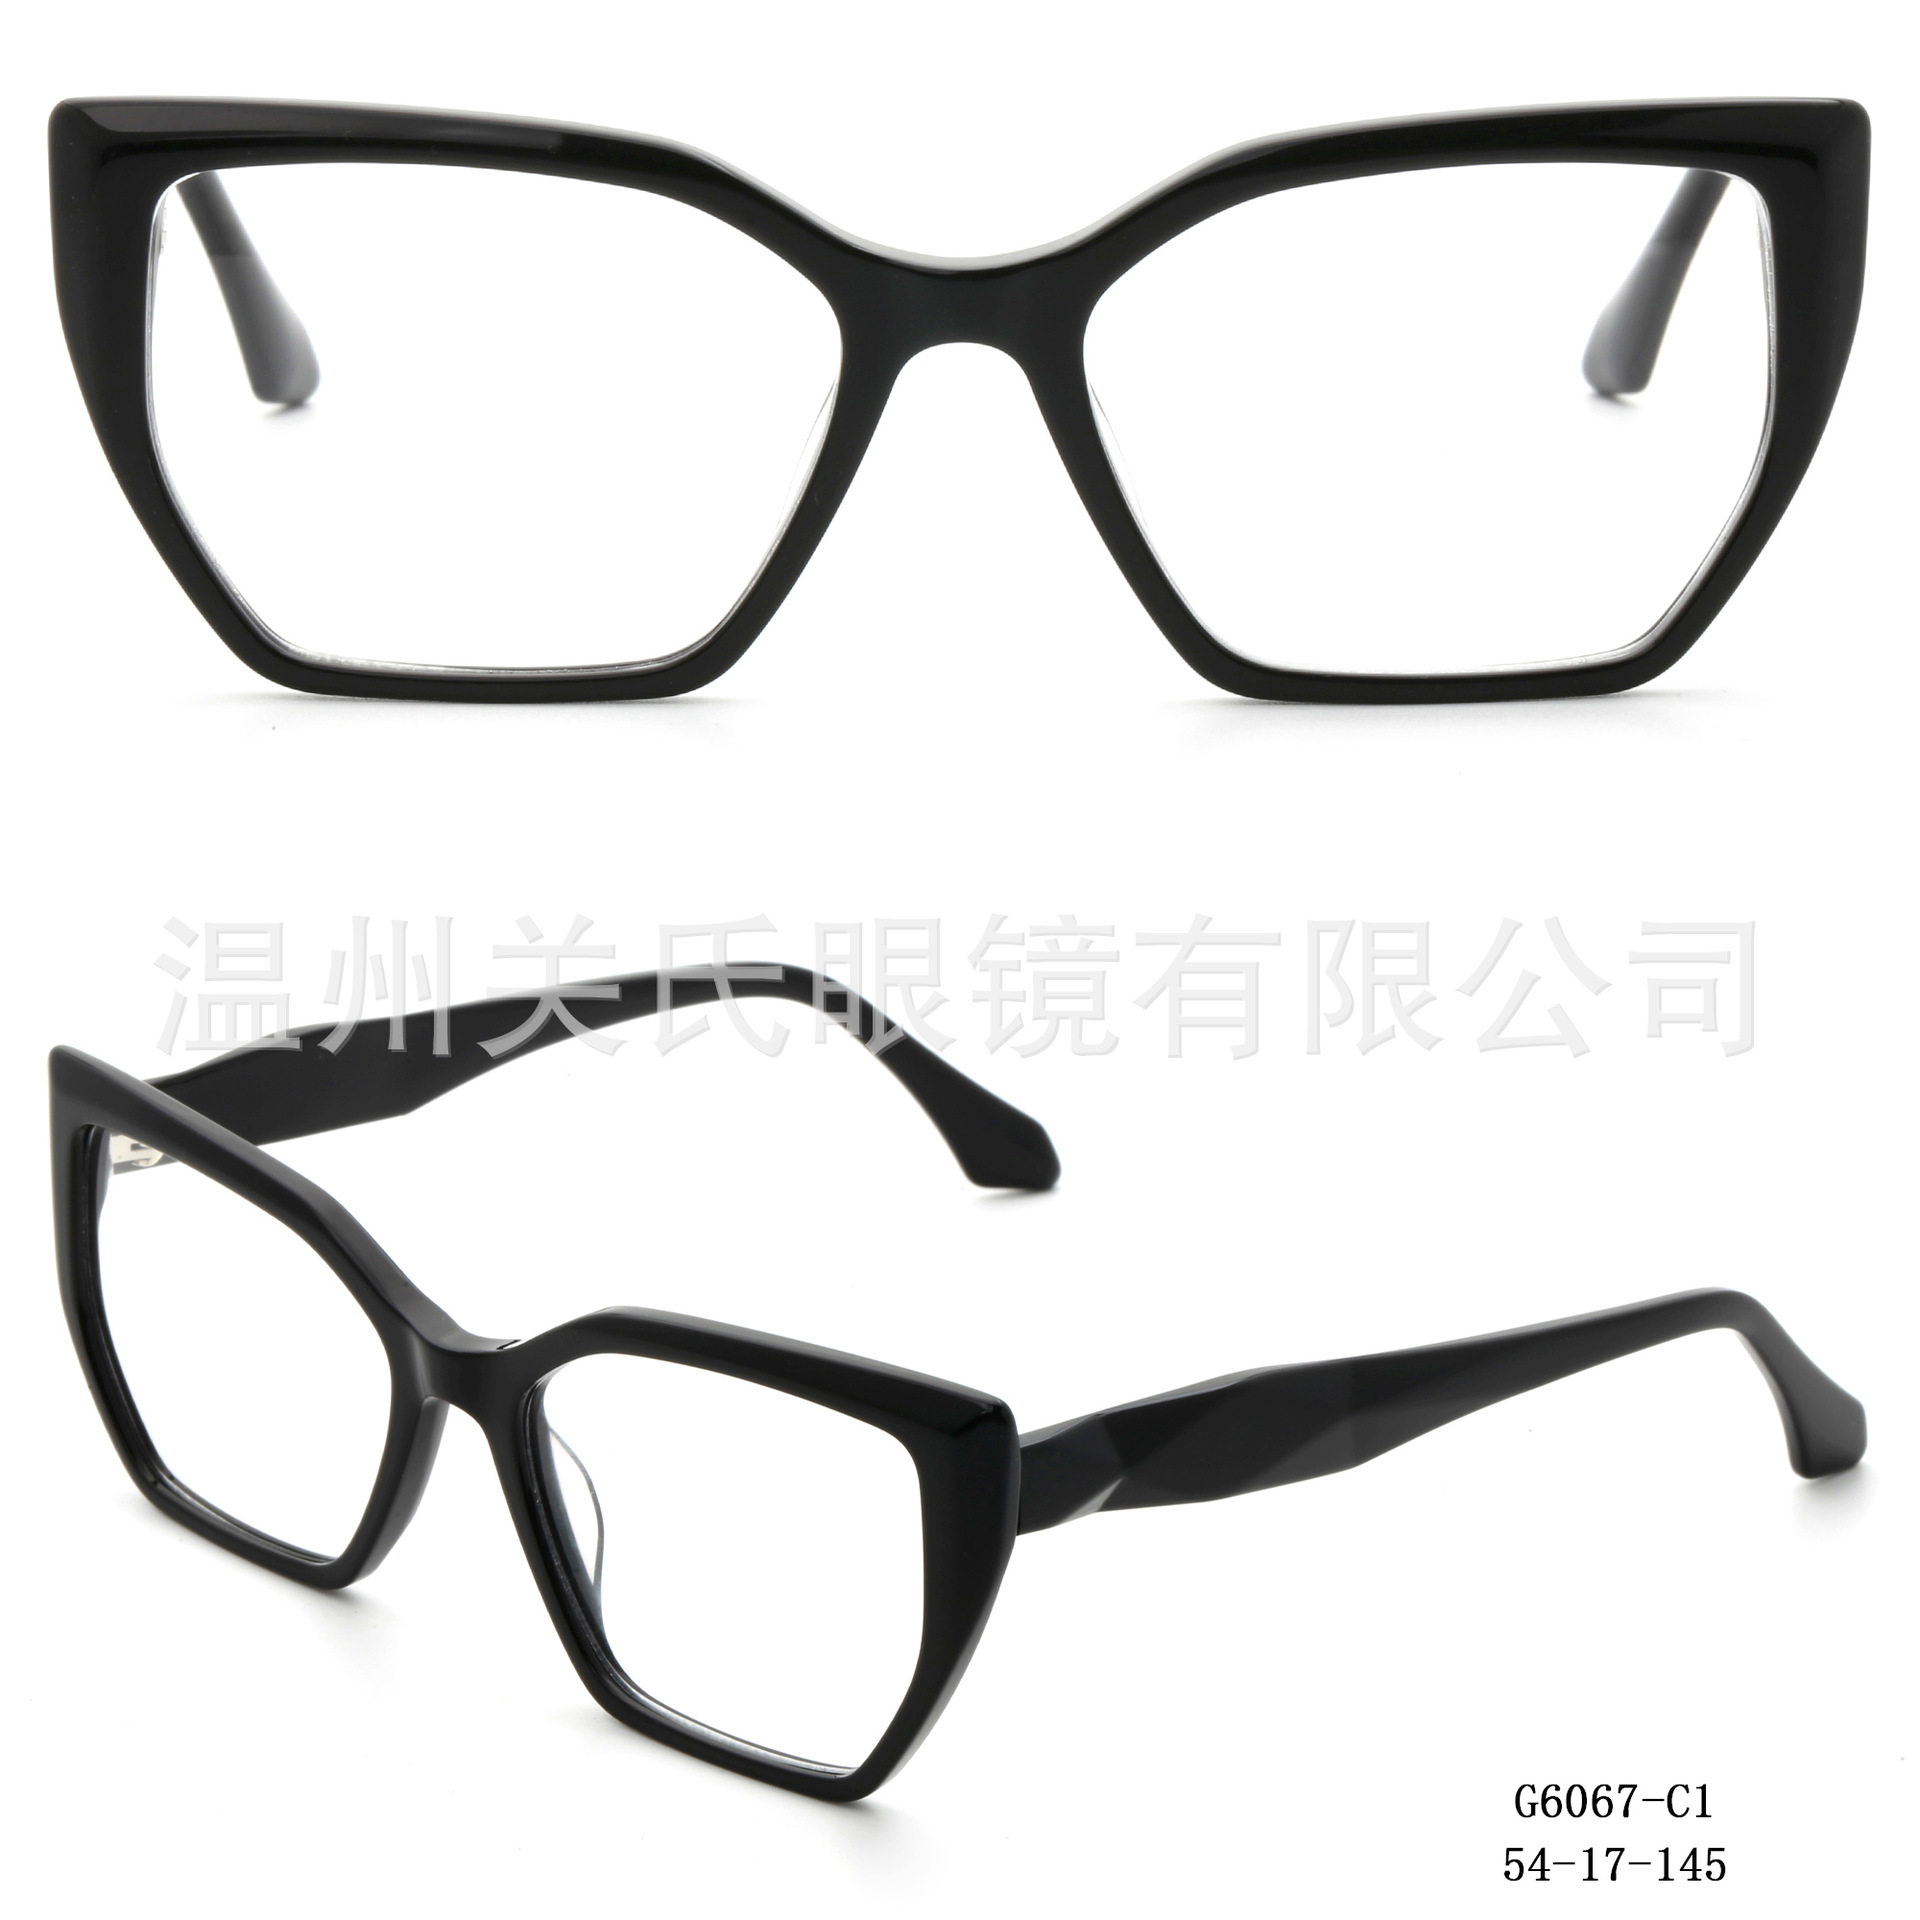 温州关氏眼镜有限公司